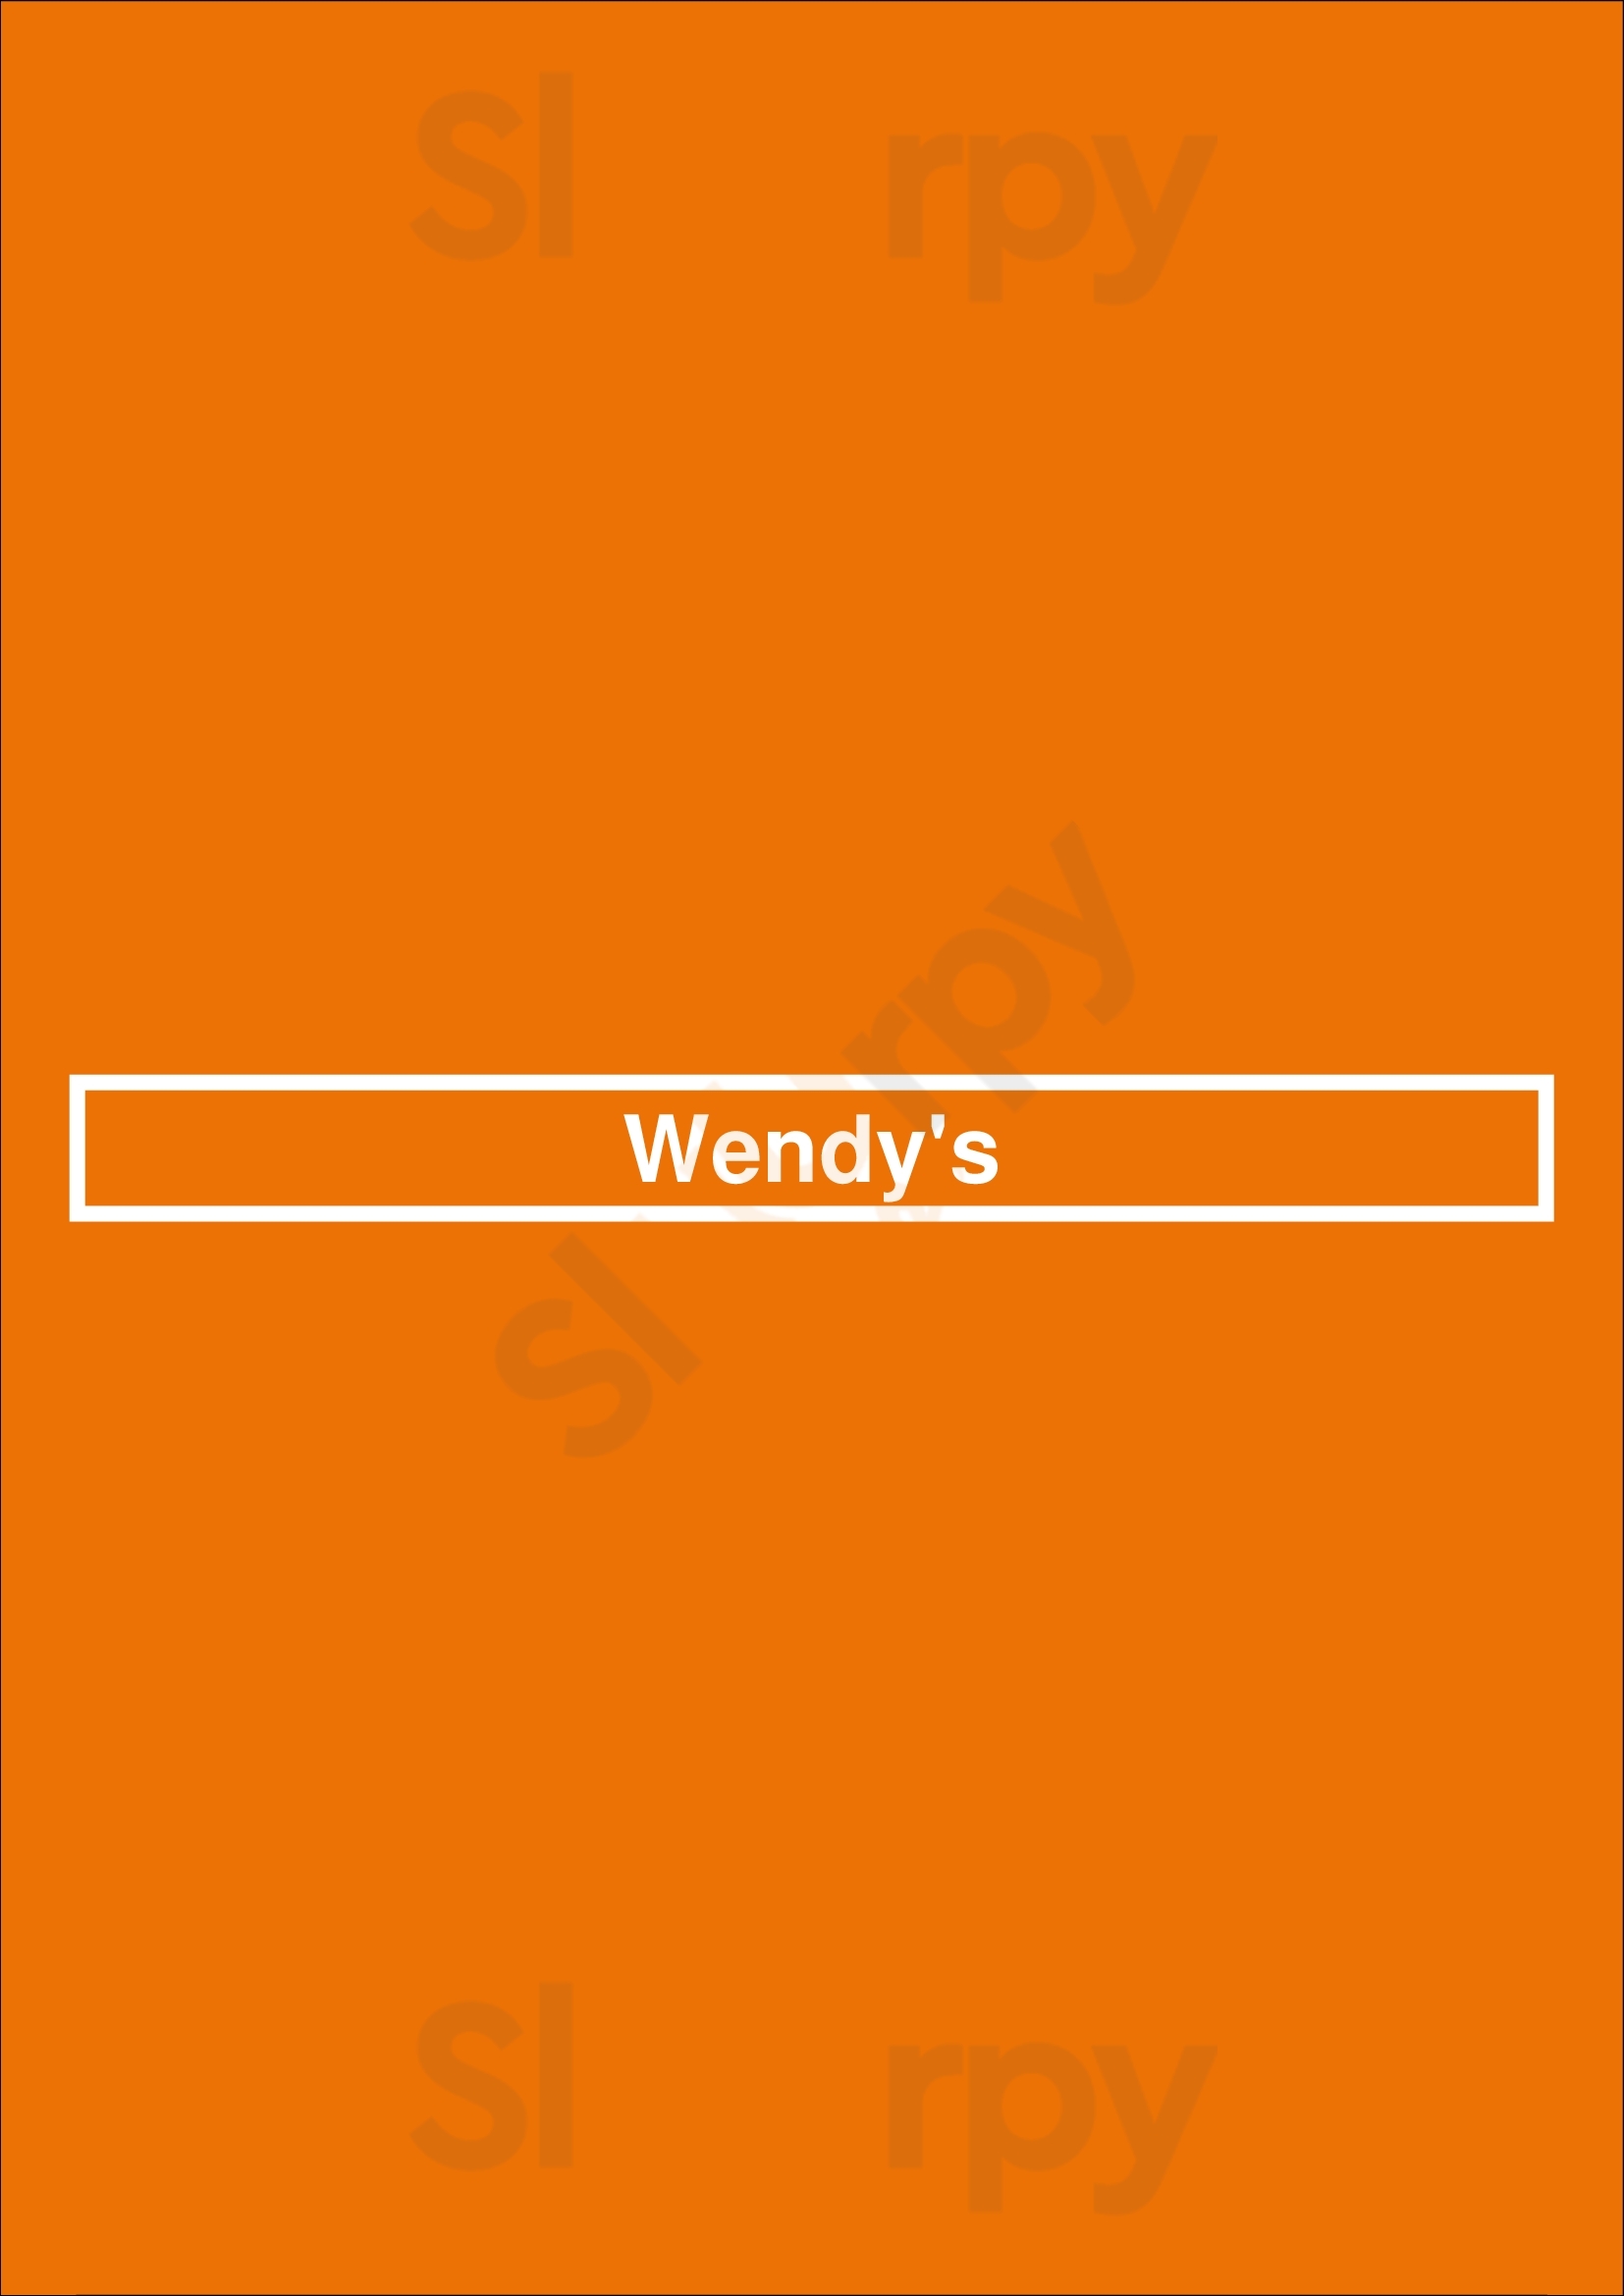 Wendy's Spokane Menu - 1